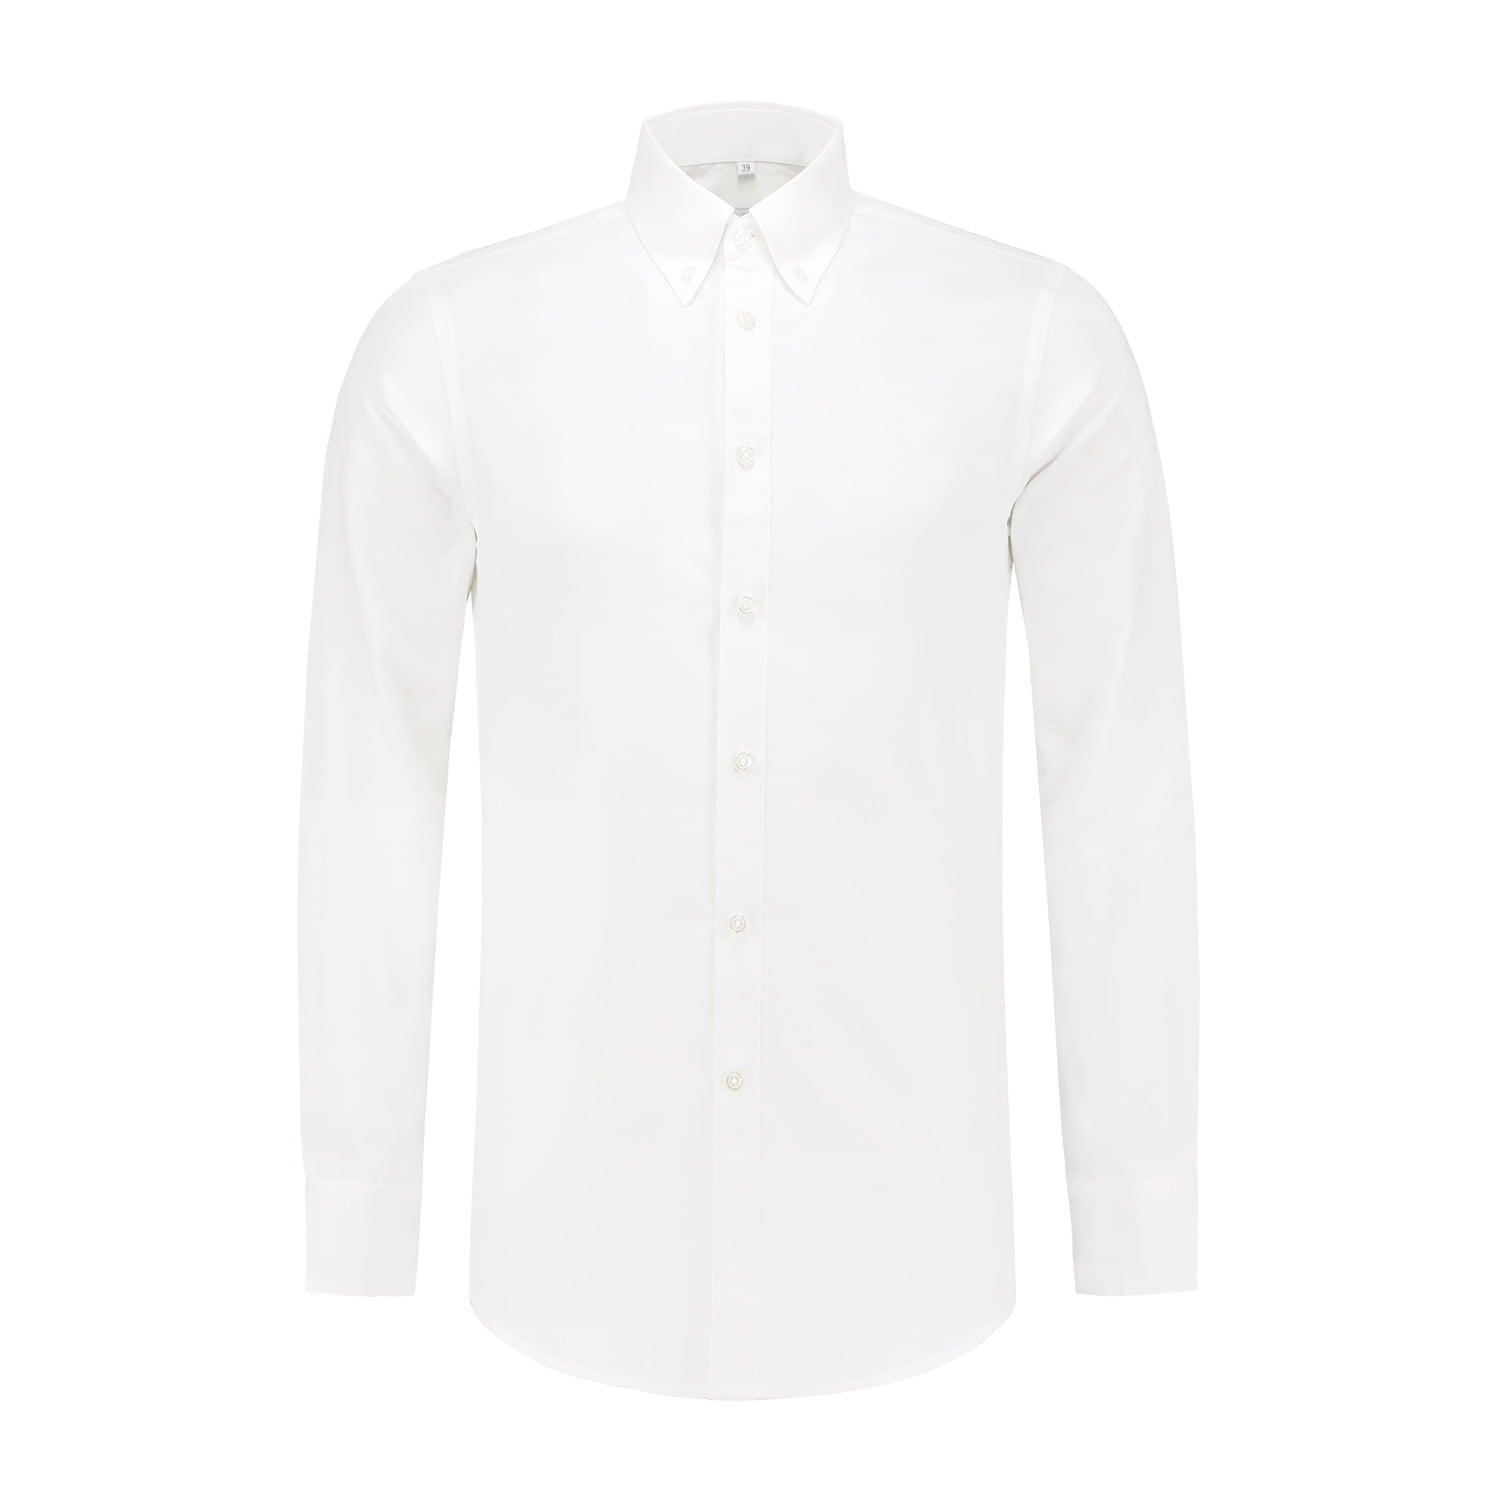 White button down shirt men